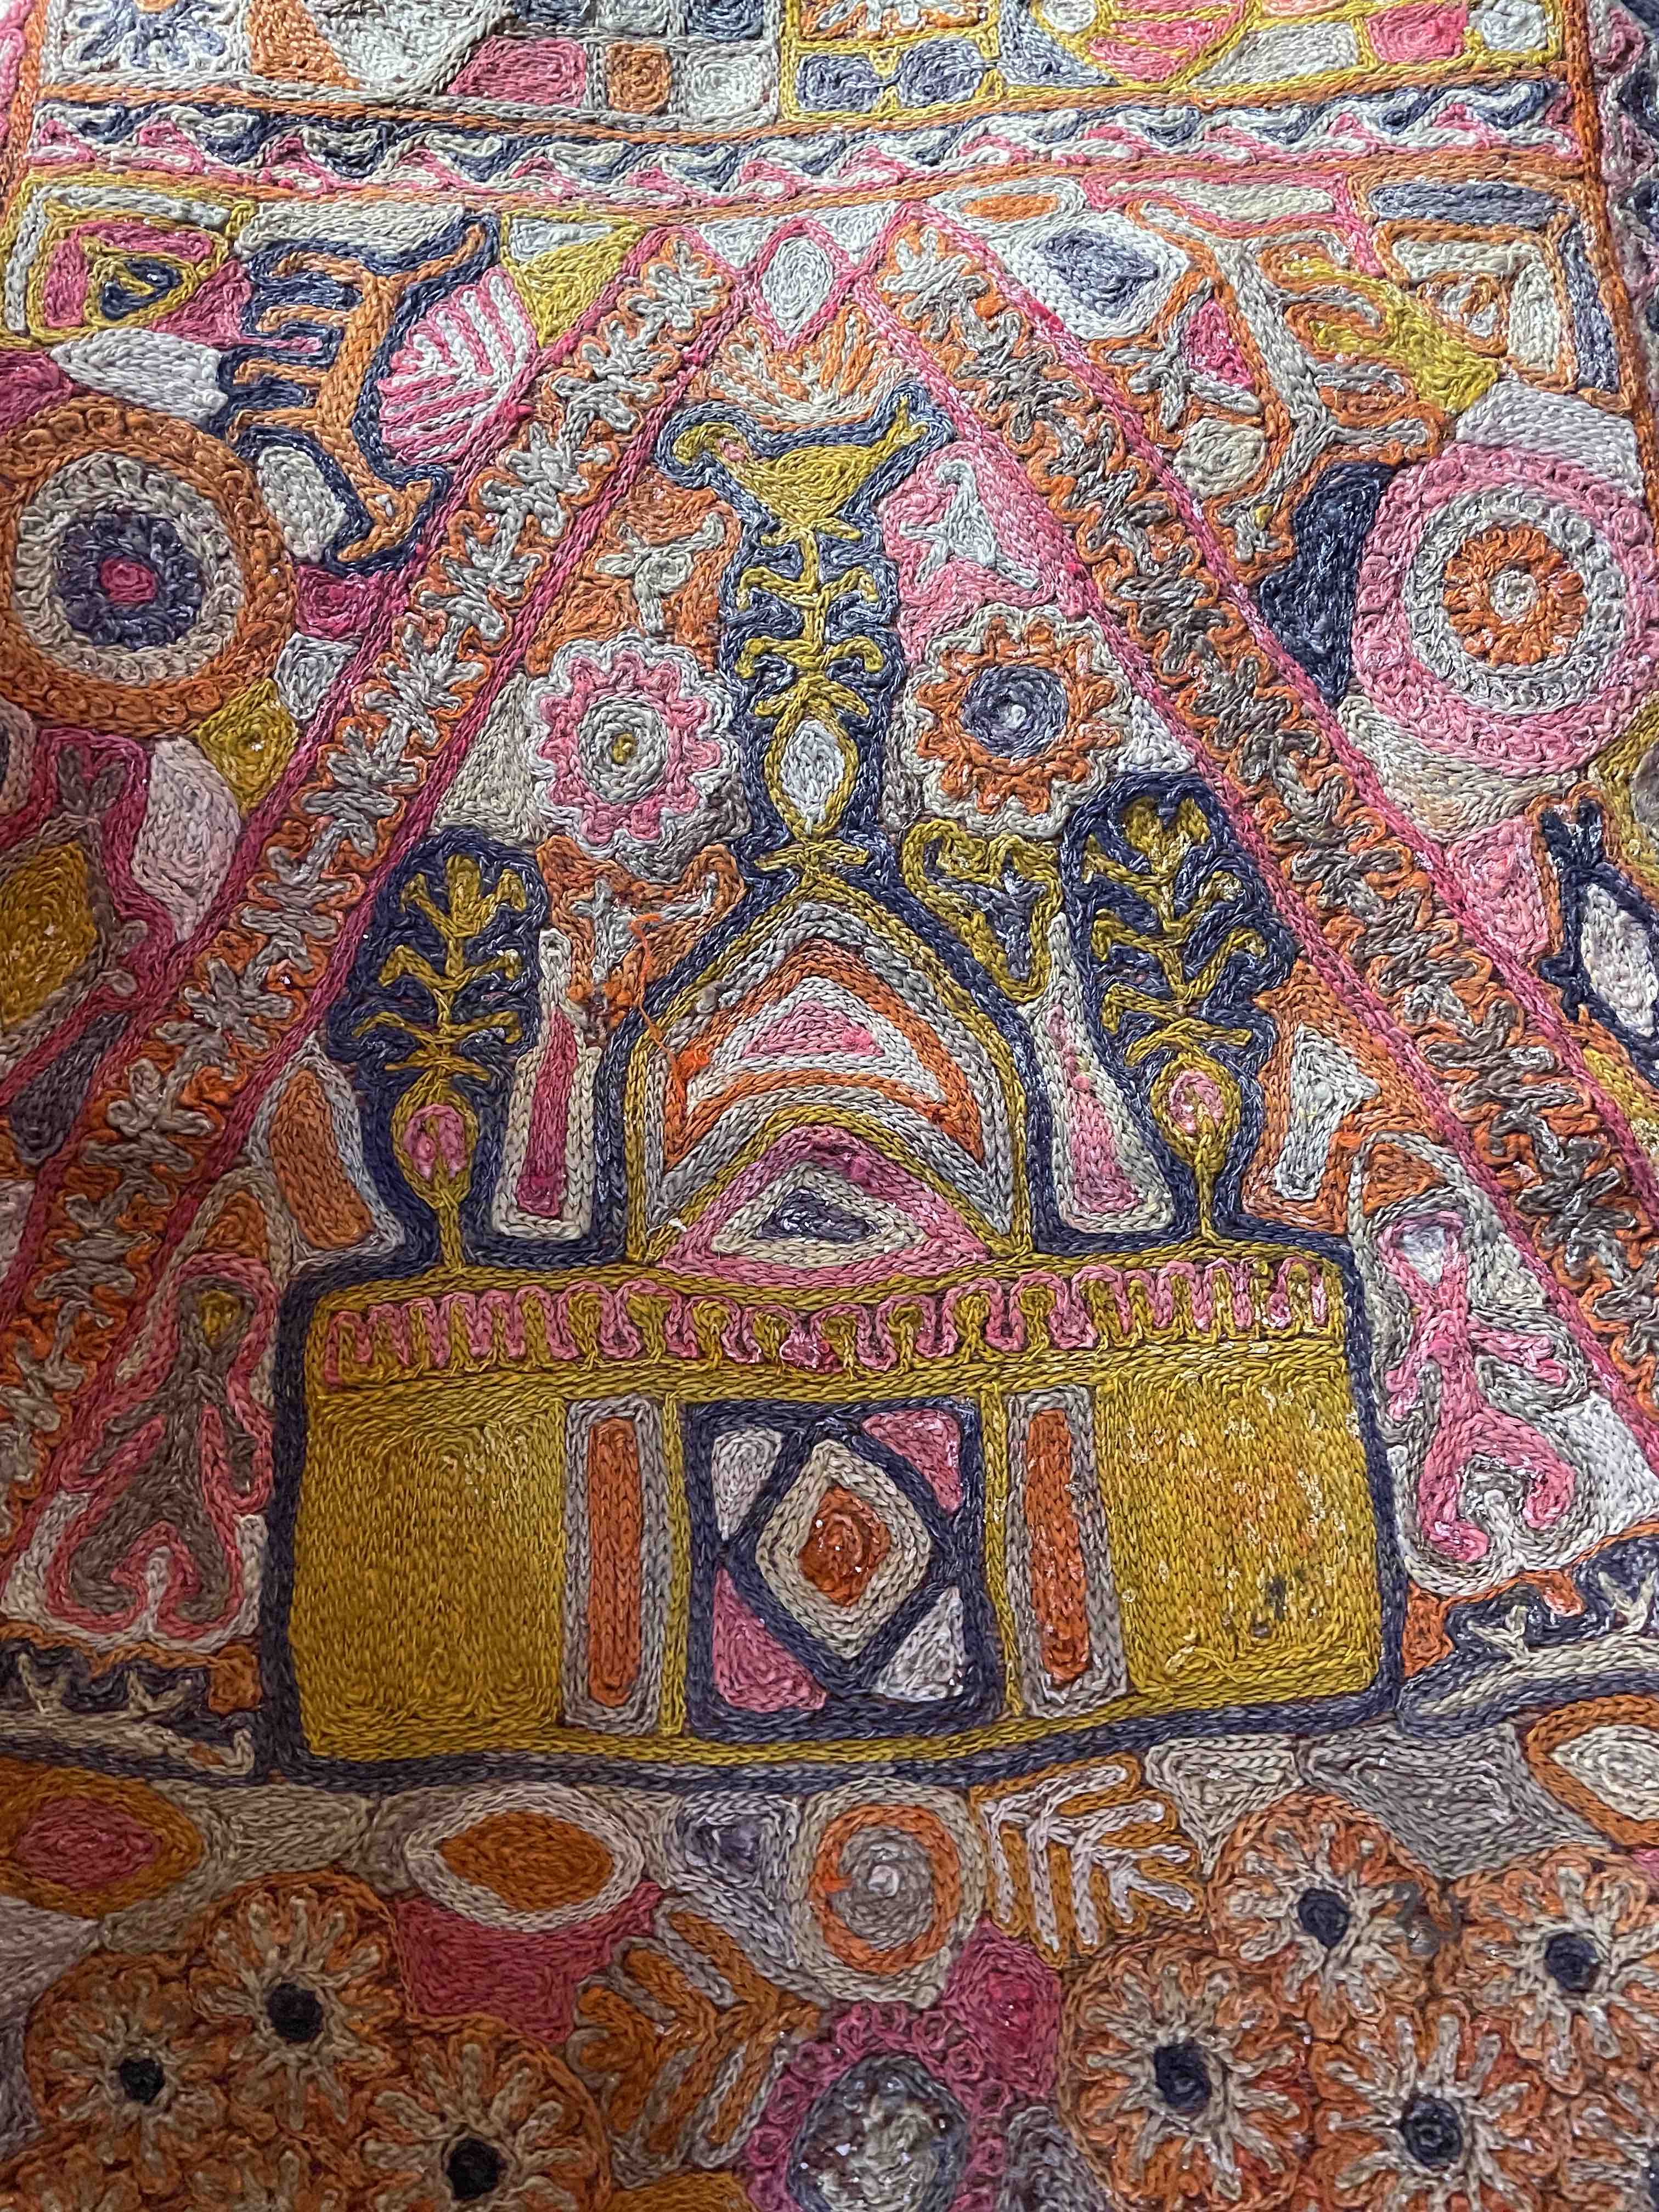 ユダヤ教の会堂らしき図案が描かれた謎の刺繍布